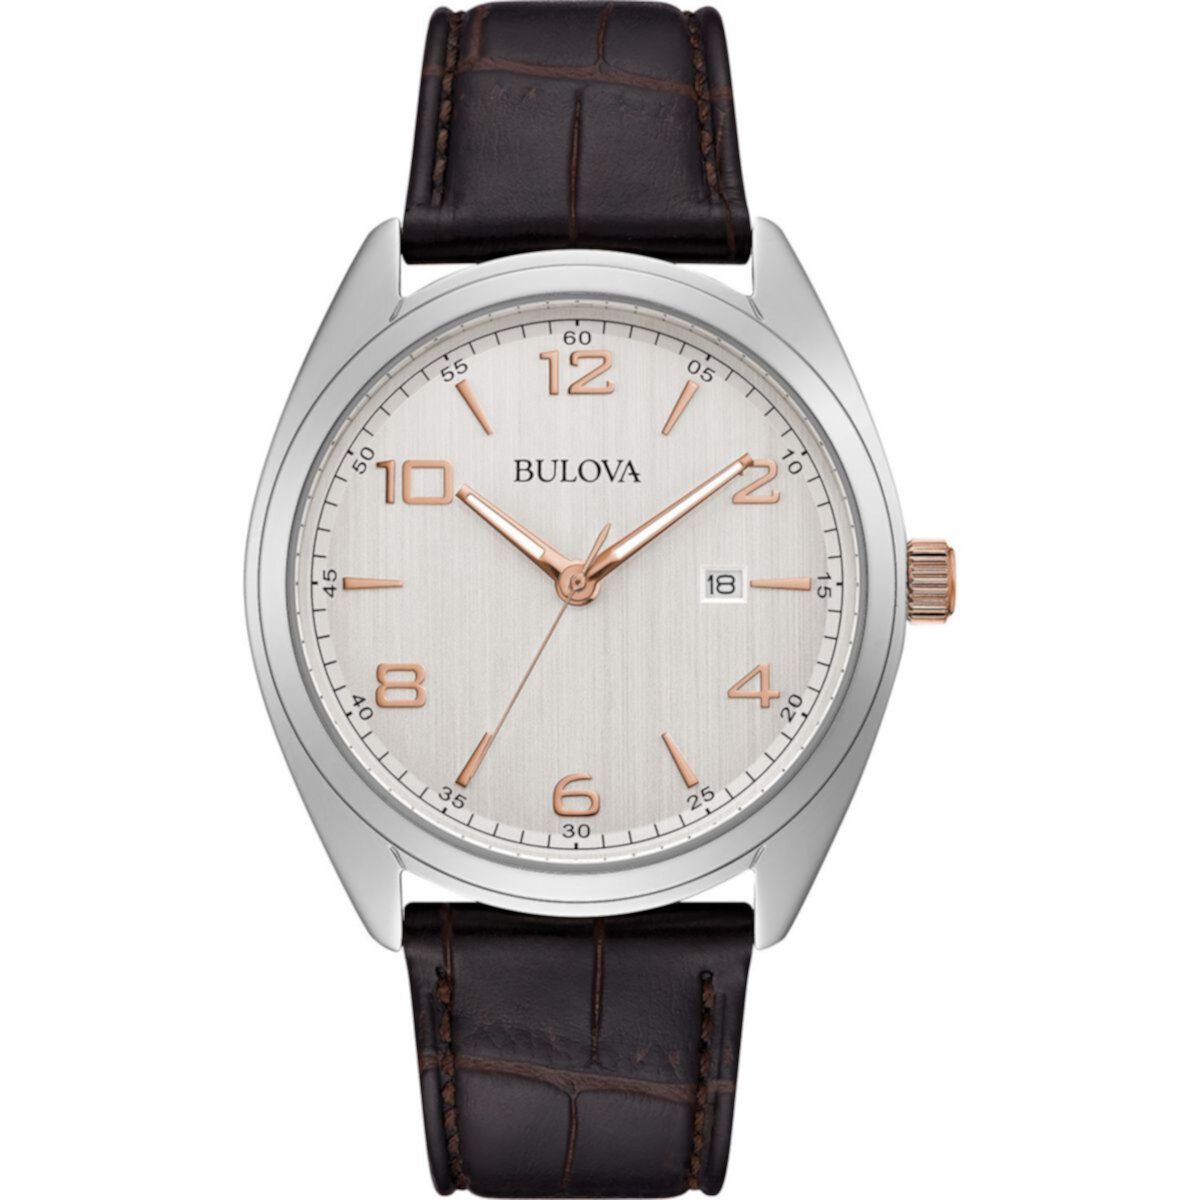 Мужские часы Bulova Classic с коричневым кожаным ремешком — 98B347 Bulova